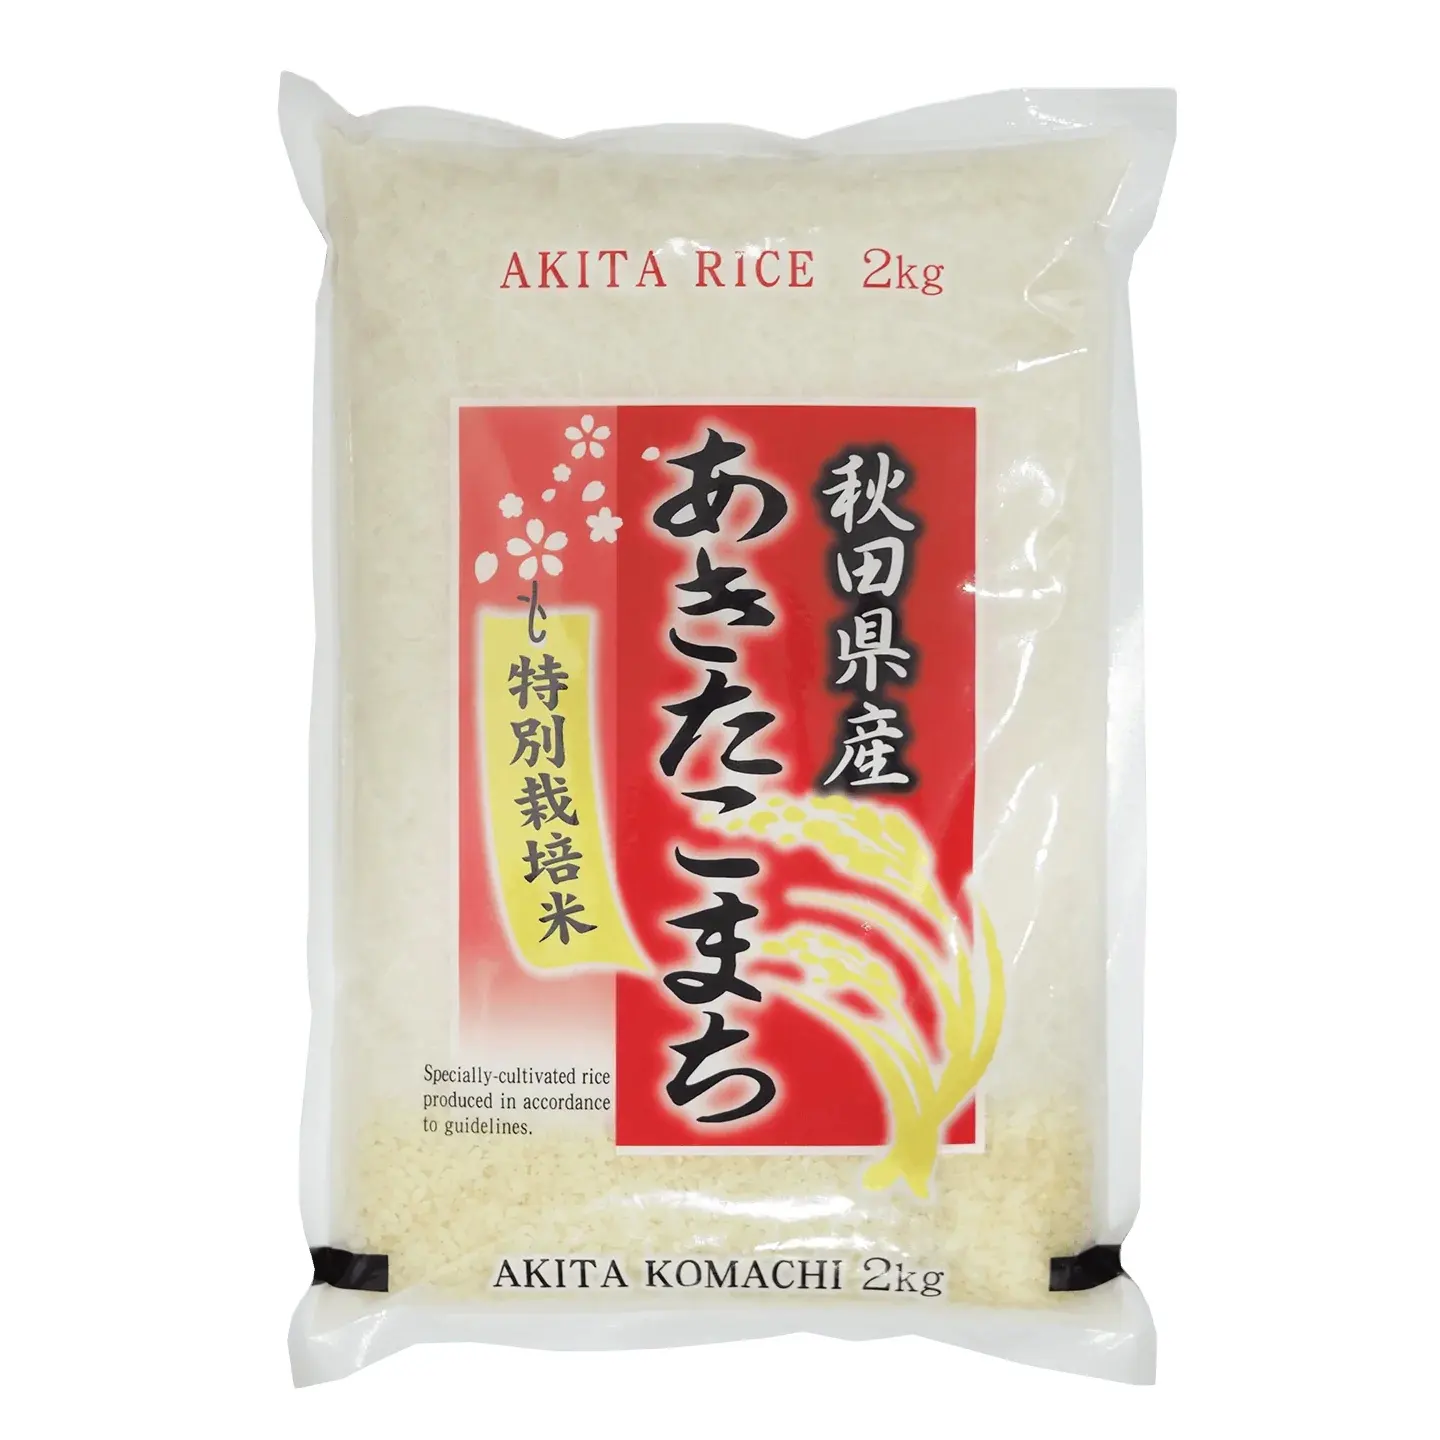 أرز السوشي المصري القصير الأرز المصري الياباني (رقم واتساب: +84-915355383)